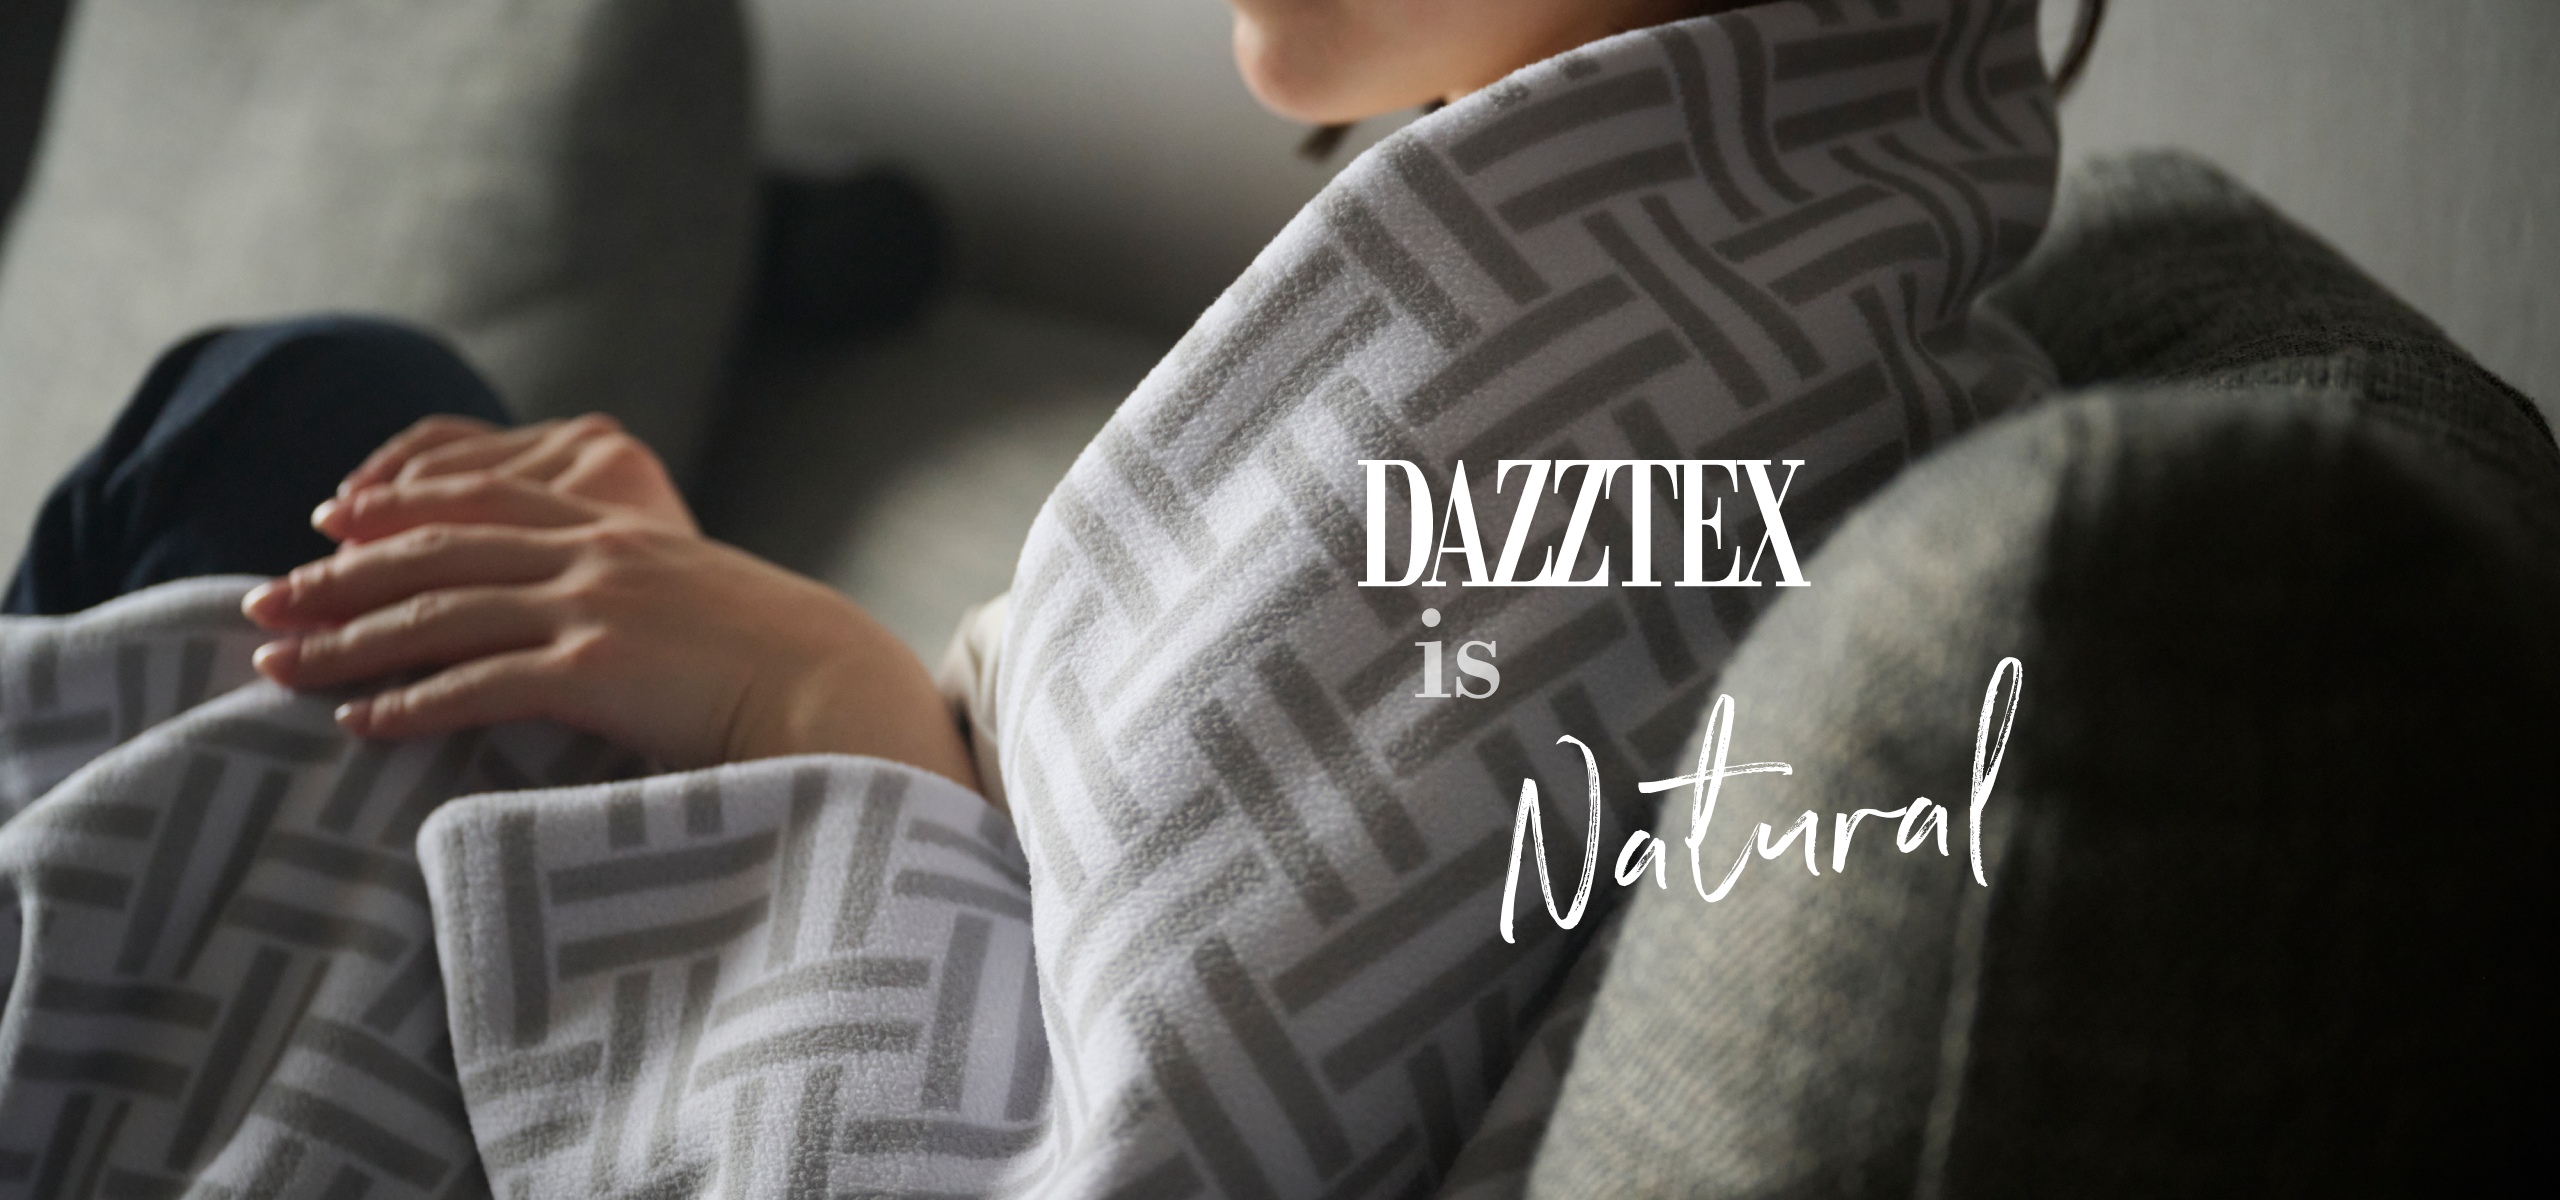 DAZZTEX is Natural